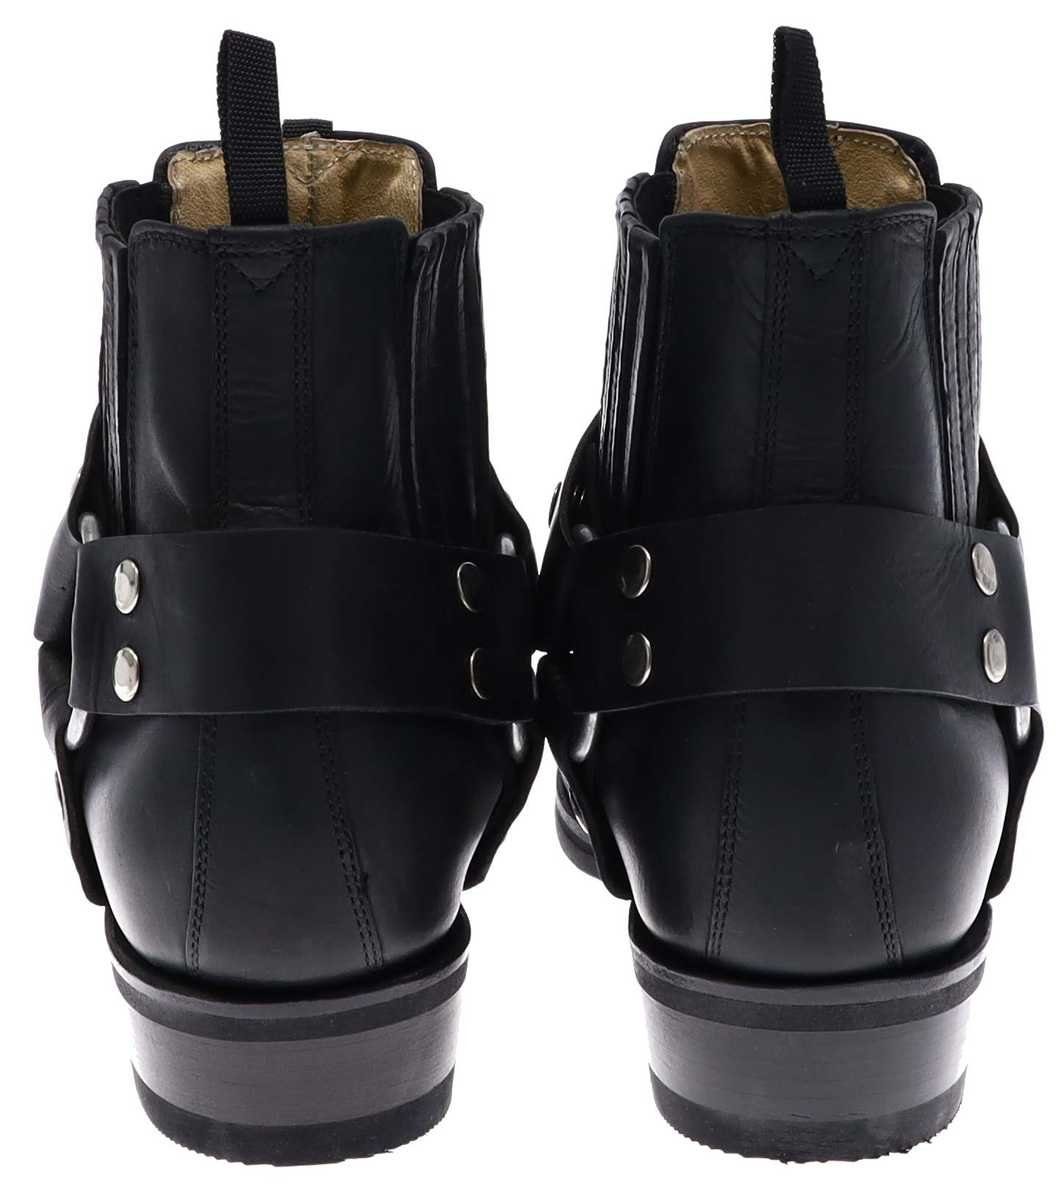 Schuhe Klassische Stiefeletten FB Fashion Boots BU2003 Bikerstiefelette Schwarz Stiefelette Rahmengenäht